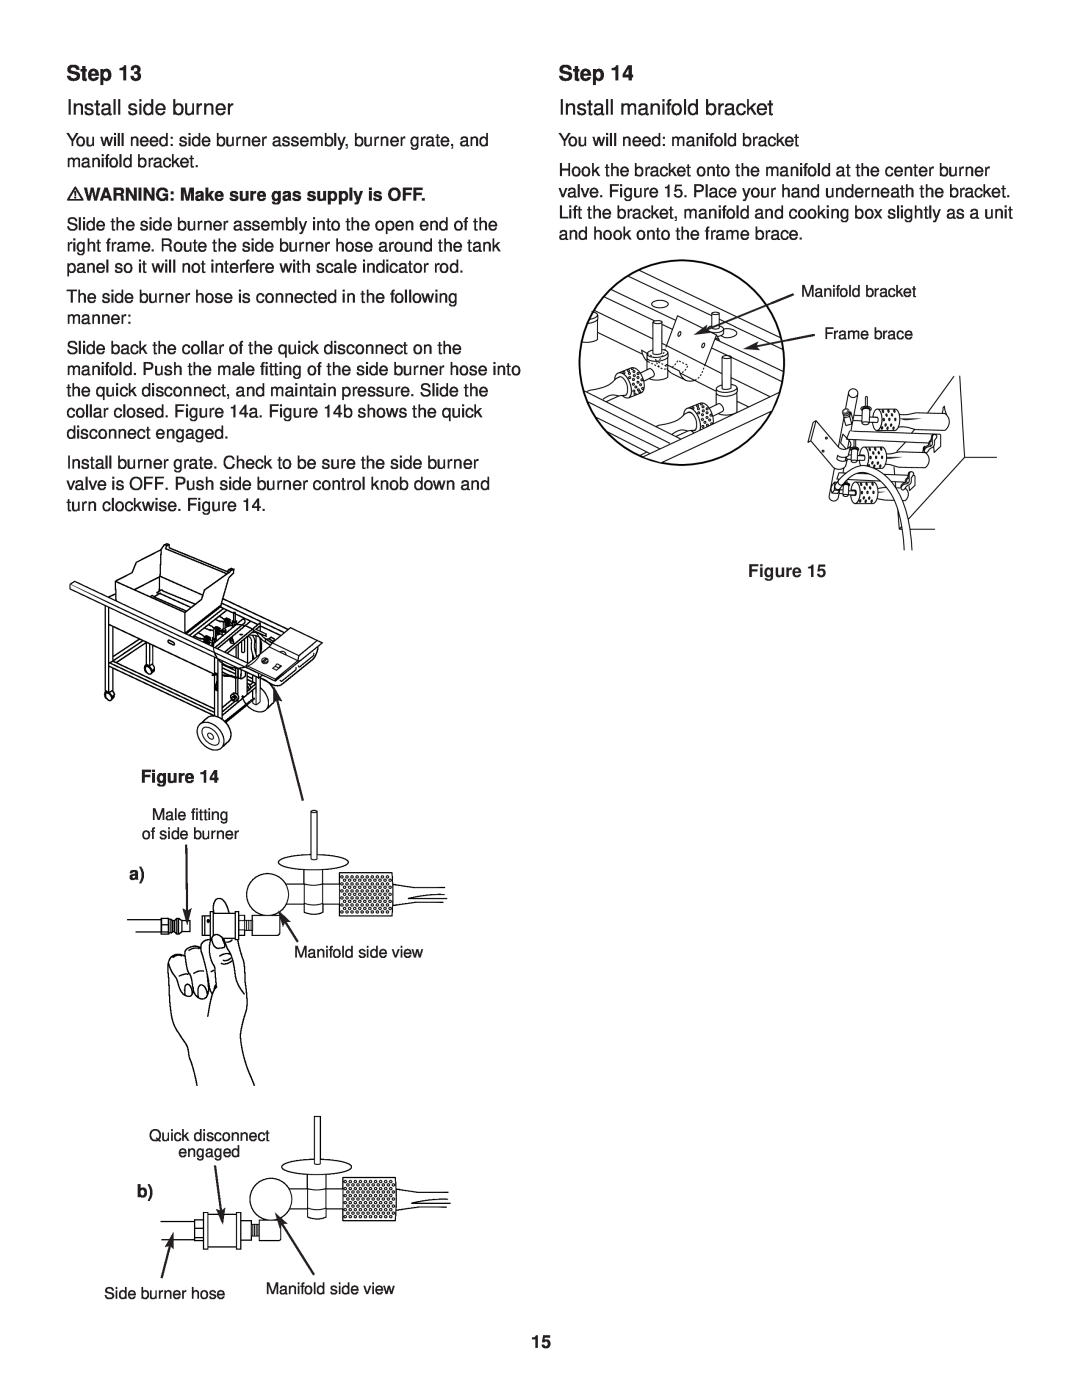 Weber 3000 owner manual Step, Install side burner, Install manifold bracket, mWARNING Make sure gas supply is OFF 